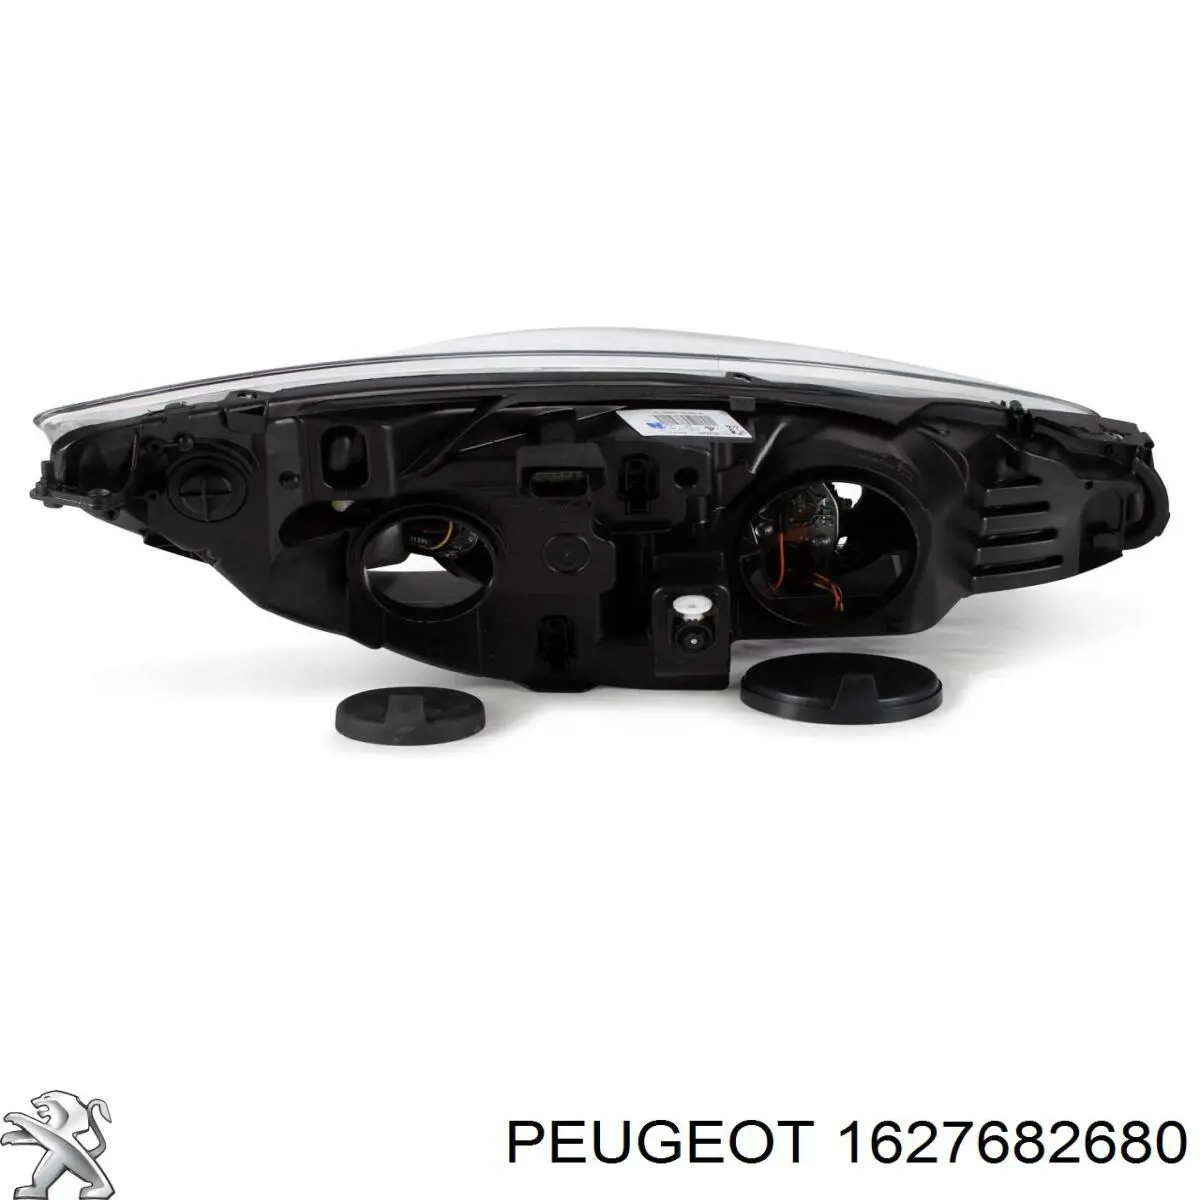 00006208X6 Peugeot/Citroen faro izquierdo